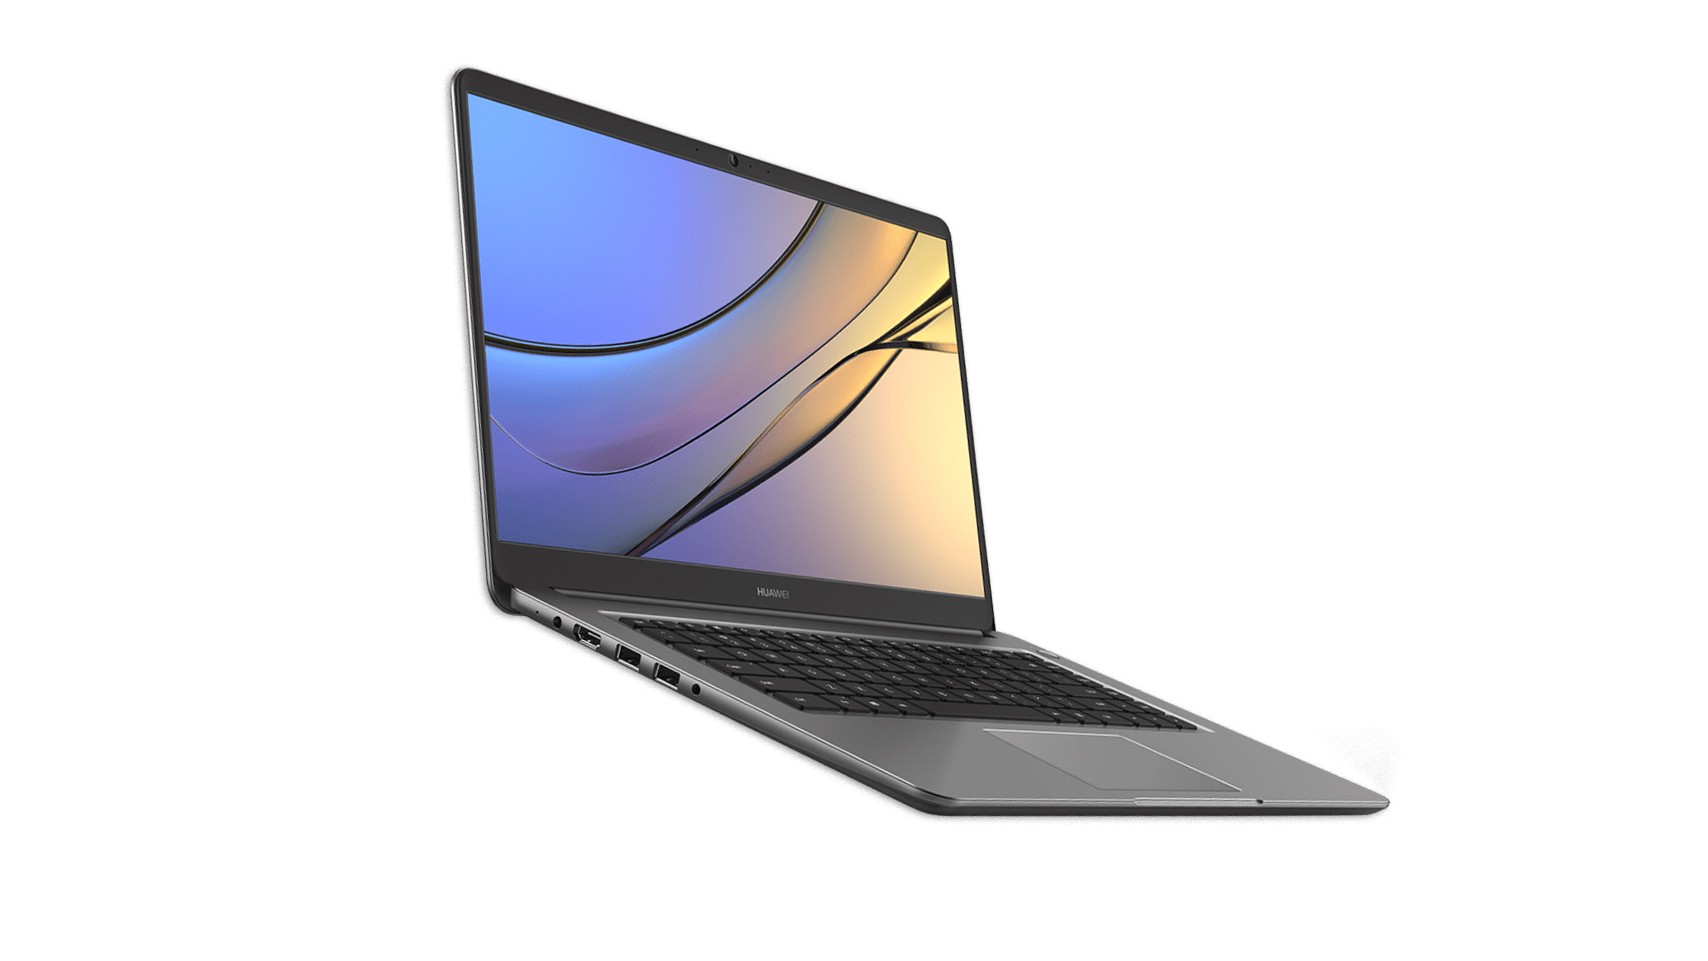 Алюминиевый ноутбук Huawei MateBook D (2018) получил восьмое поколение процессоров Intel